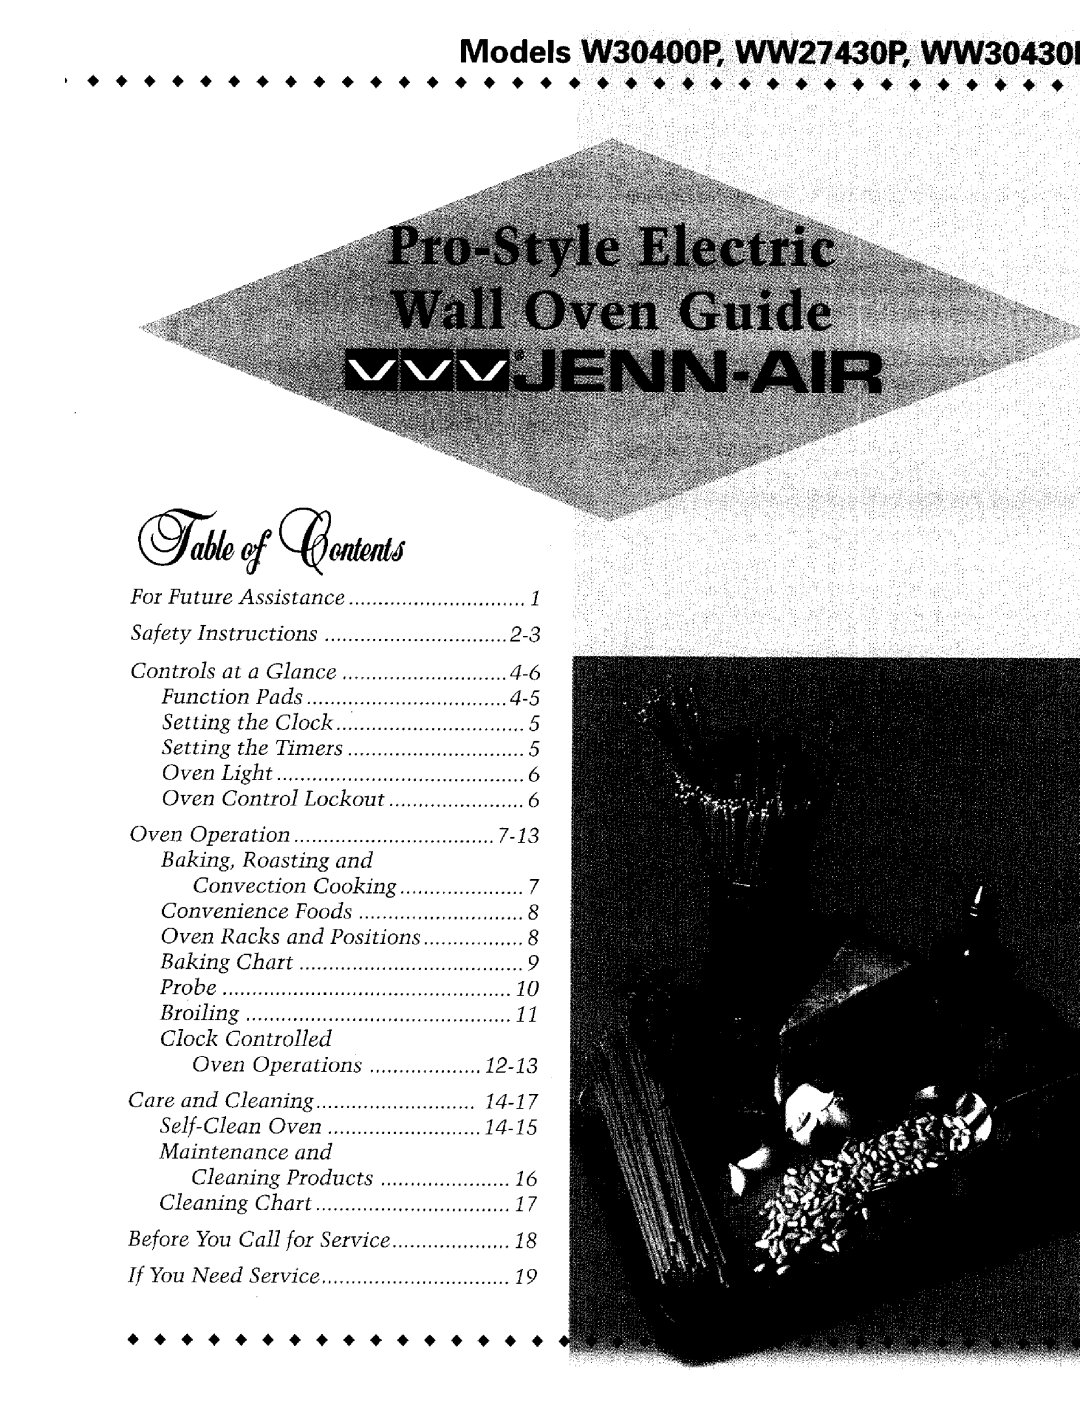 Jenn-Air WM27430P, W30400P manual Models 